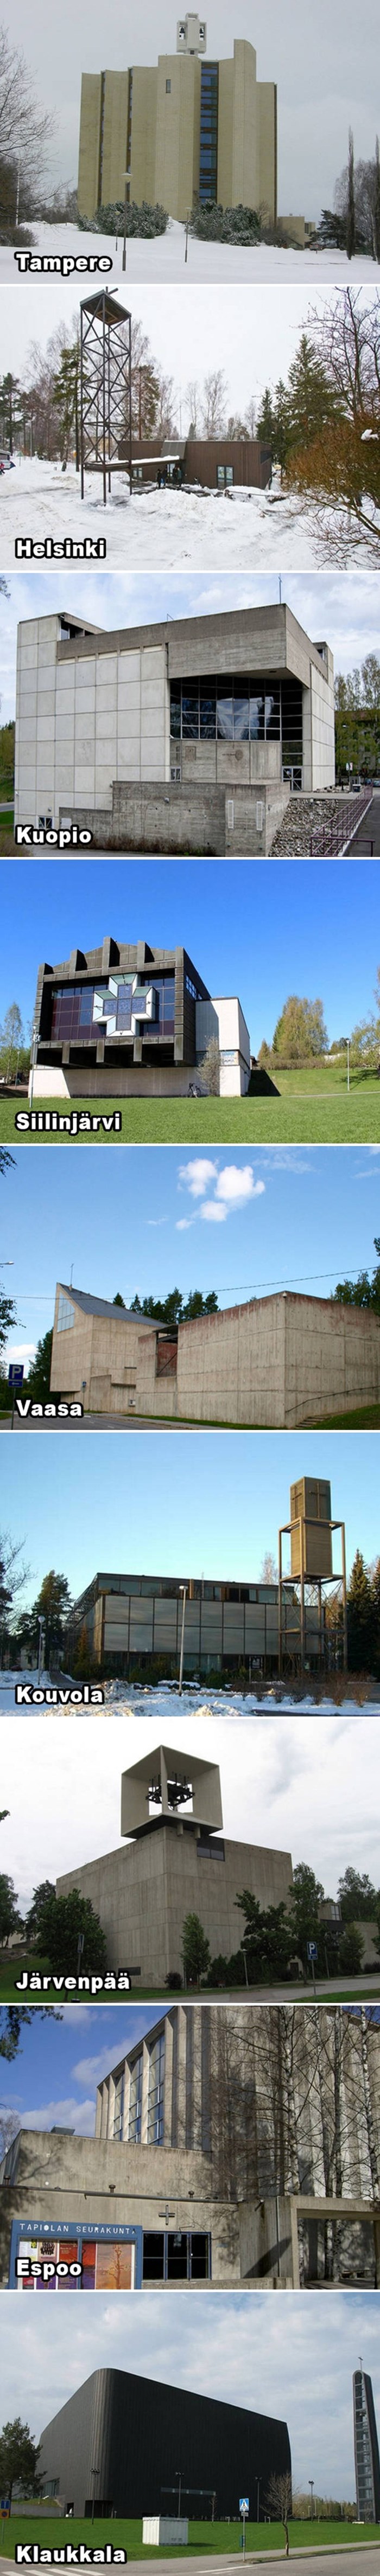 Finska je domovina najčudnijih crkava na svijetu, evo kako izgledaju mjesta gdje se mole njihovi vjernici